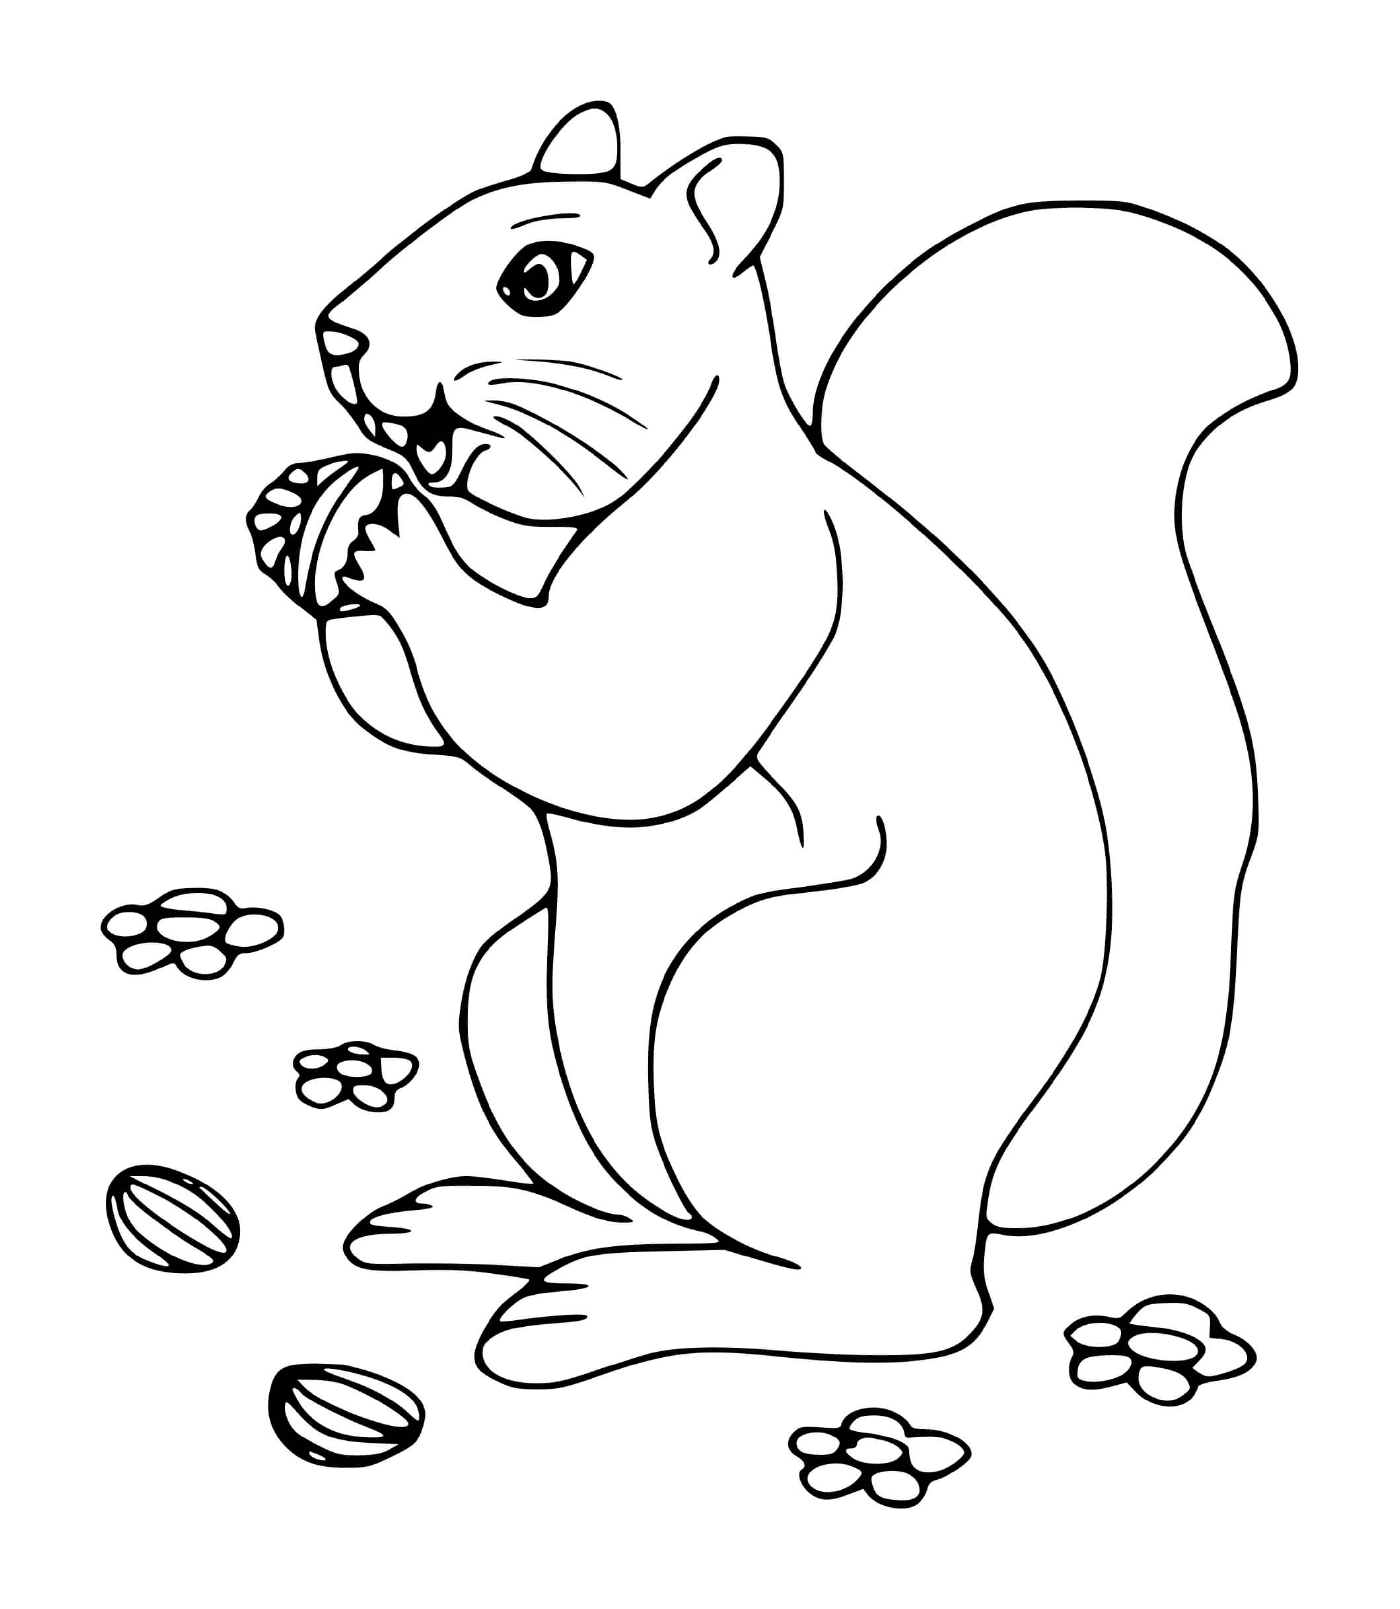  Das Eichhörnchen liebt Haselnüsse 